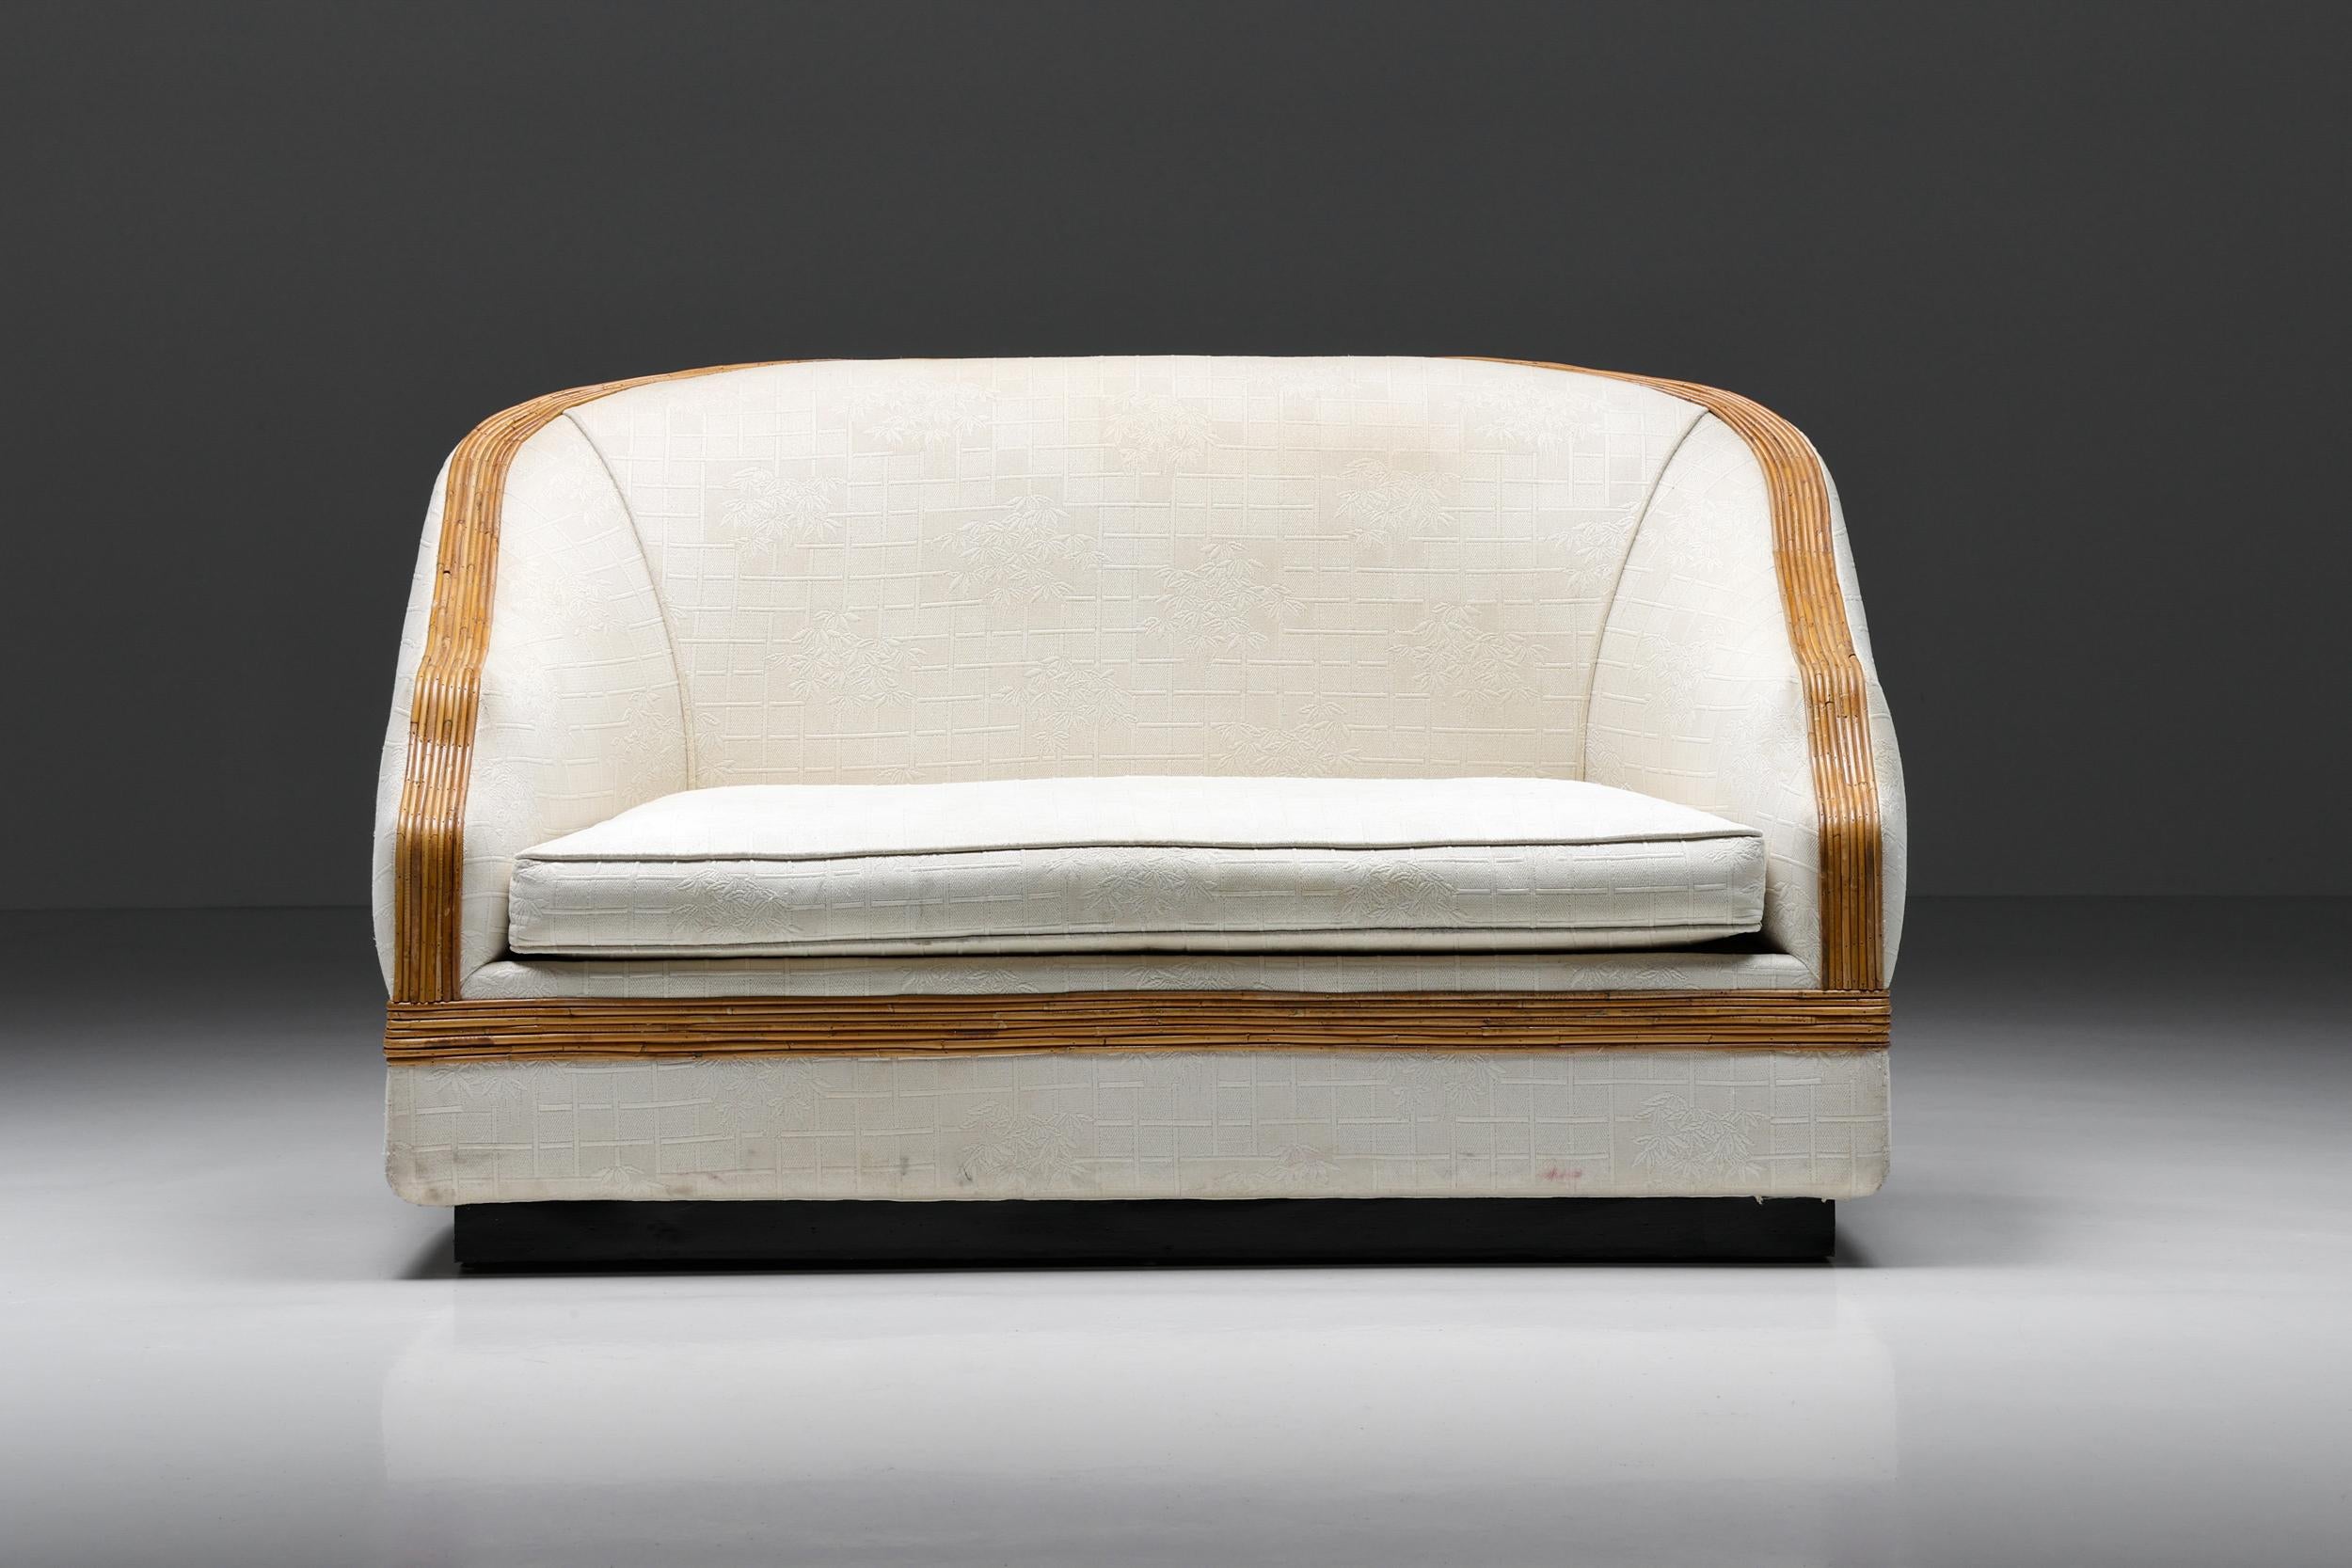 Vivai del Sud Bergère Stuhl, italienischer Tropicalist Stil, Rattan, Seide, 1970er Jahre

Dieses italienische Sofa im tropischen Stil von Vivai del Sud ist in Italien handgefertigt. Dieser Zweisitzer hat noch seine ursprüngliche Seidenpolsterung